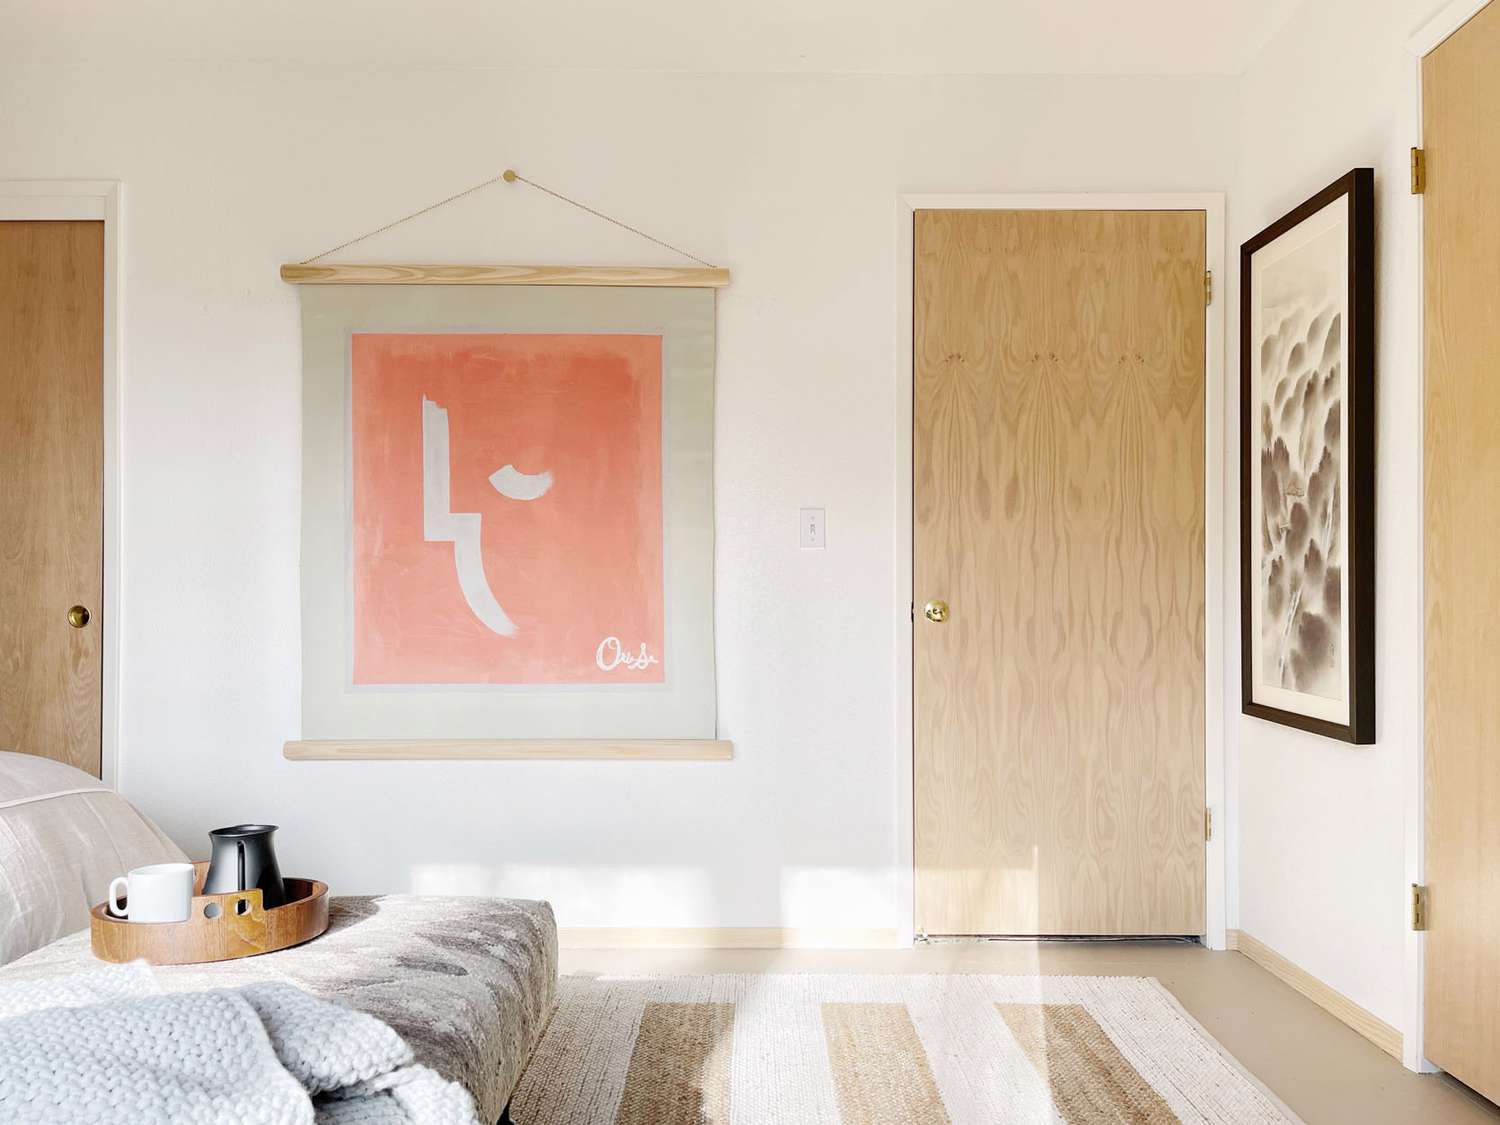 Portas de madeira clara complementam uma decoração de parede pêssego que cobre um quarto de cor creme claro